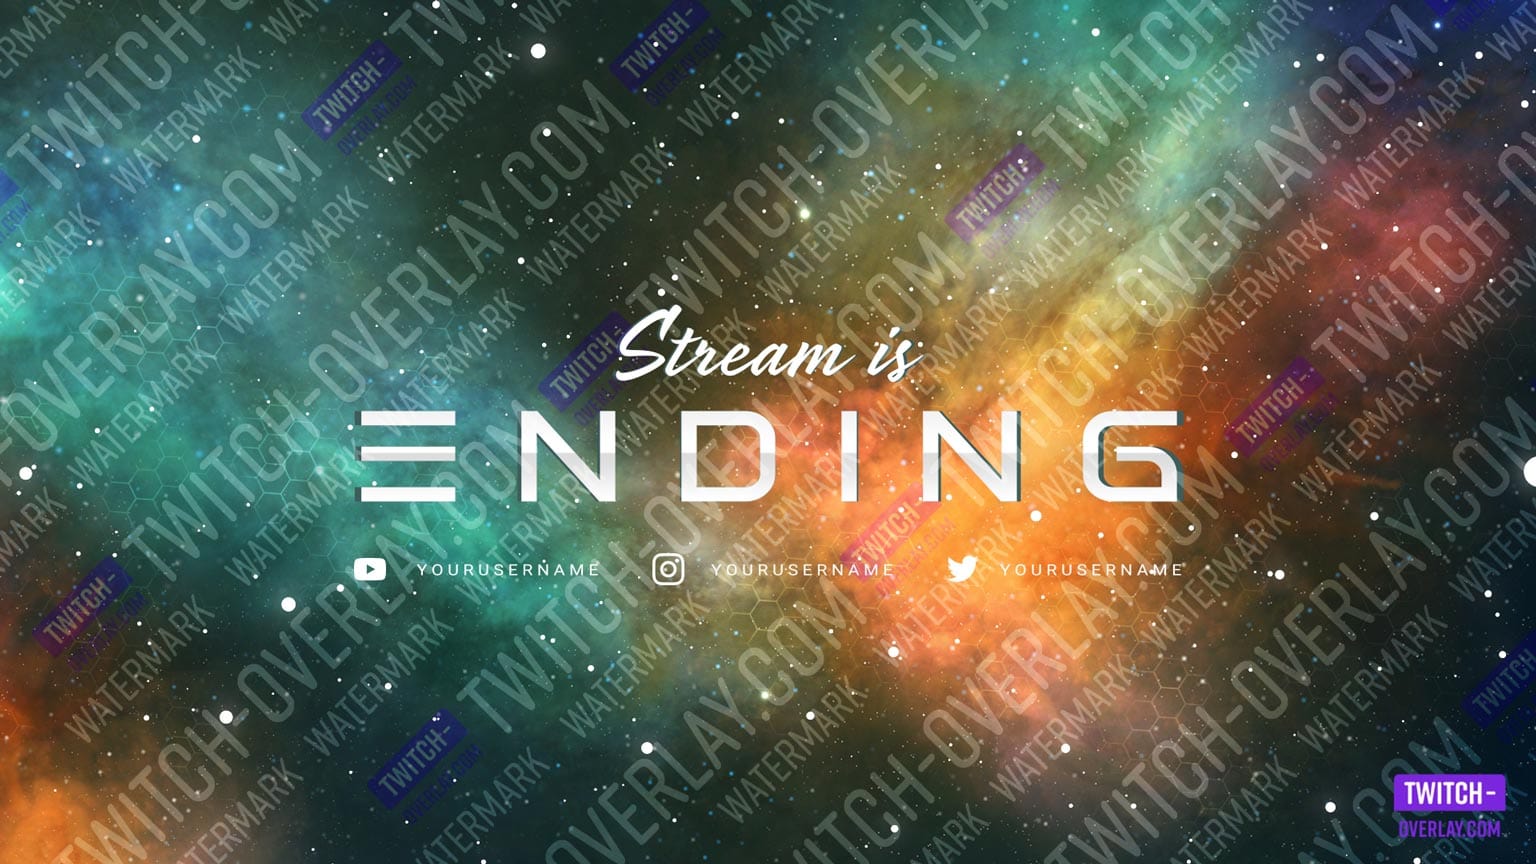 Ending Screen aus dem Nebula Galaxy Stream Bundle für Twitch, Facebook und YouTube Streams Preview